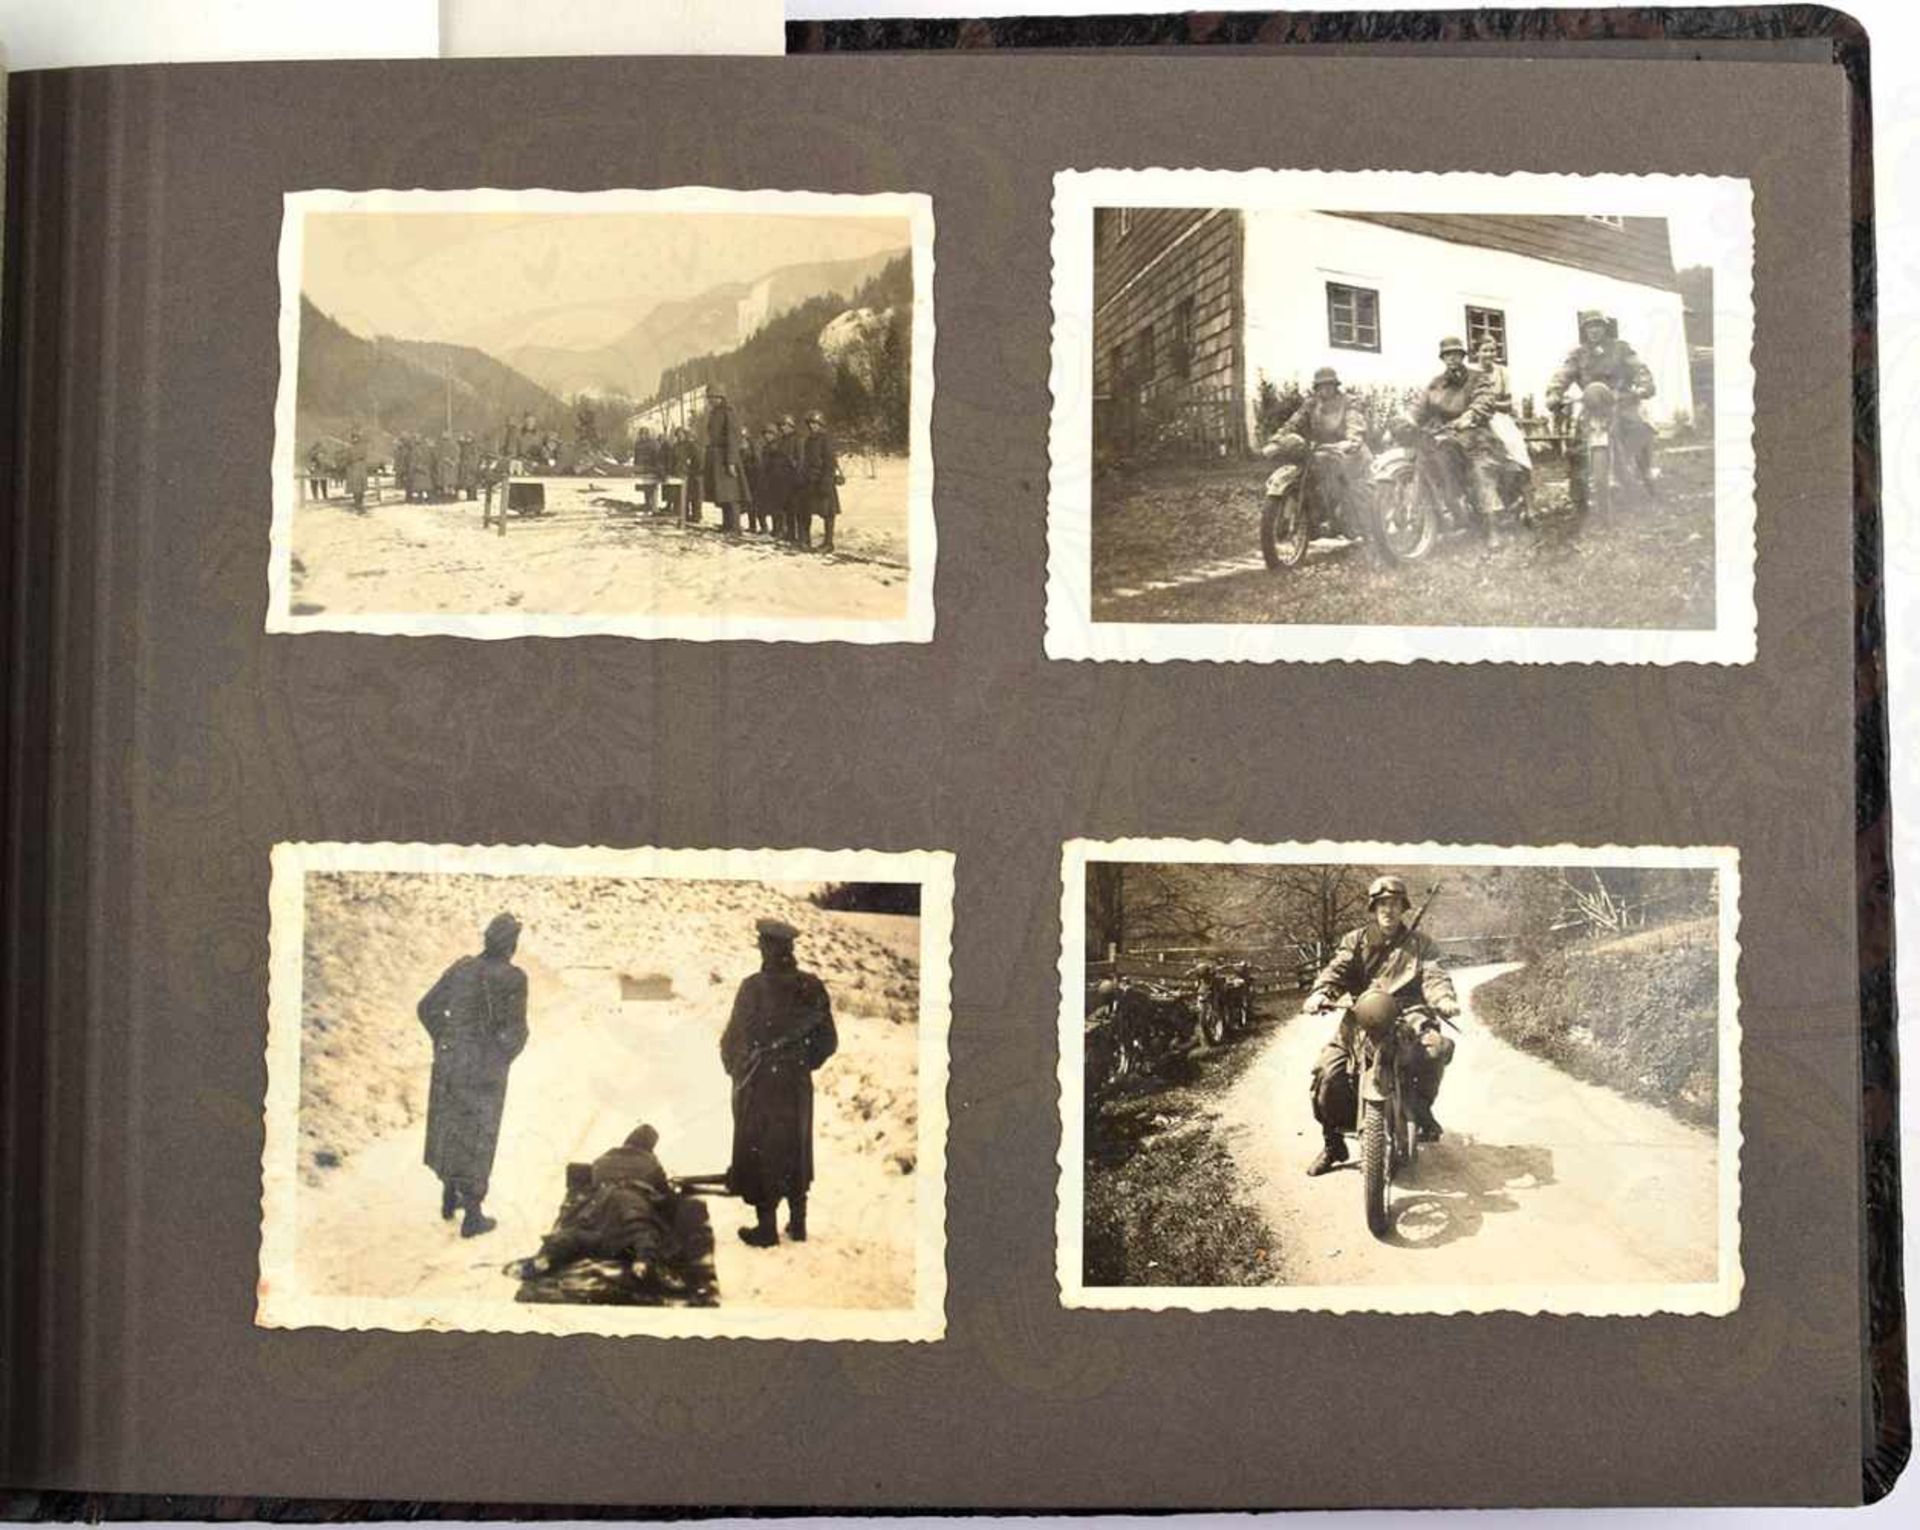 FOTOALBUM SCHÜTZEN-RGT. 10, 1939/1940, 118 Fotos u. 6 AK, Ausbildung, Sport, Schießübungen mit - Bild 3 aus 4